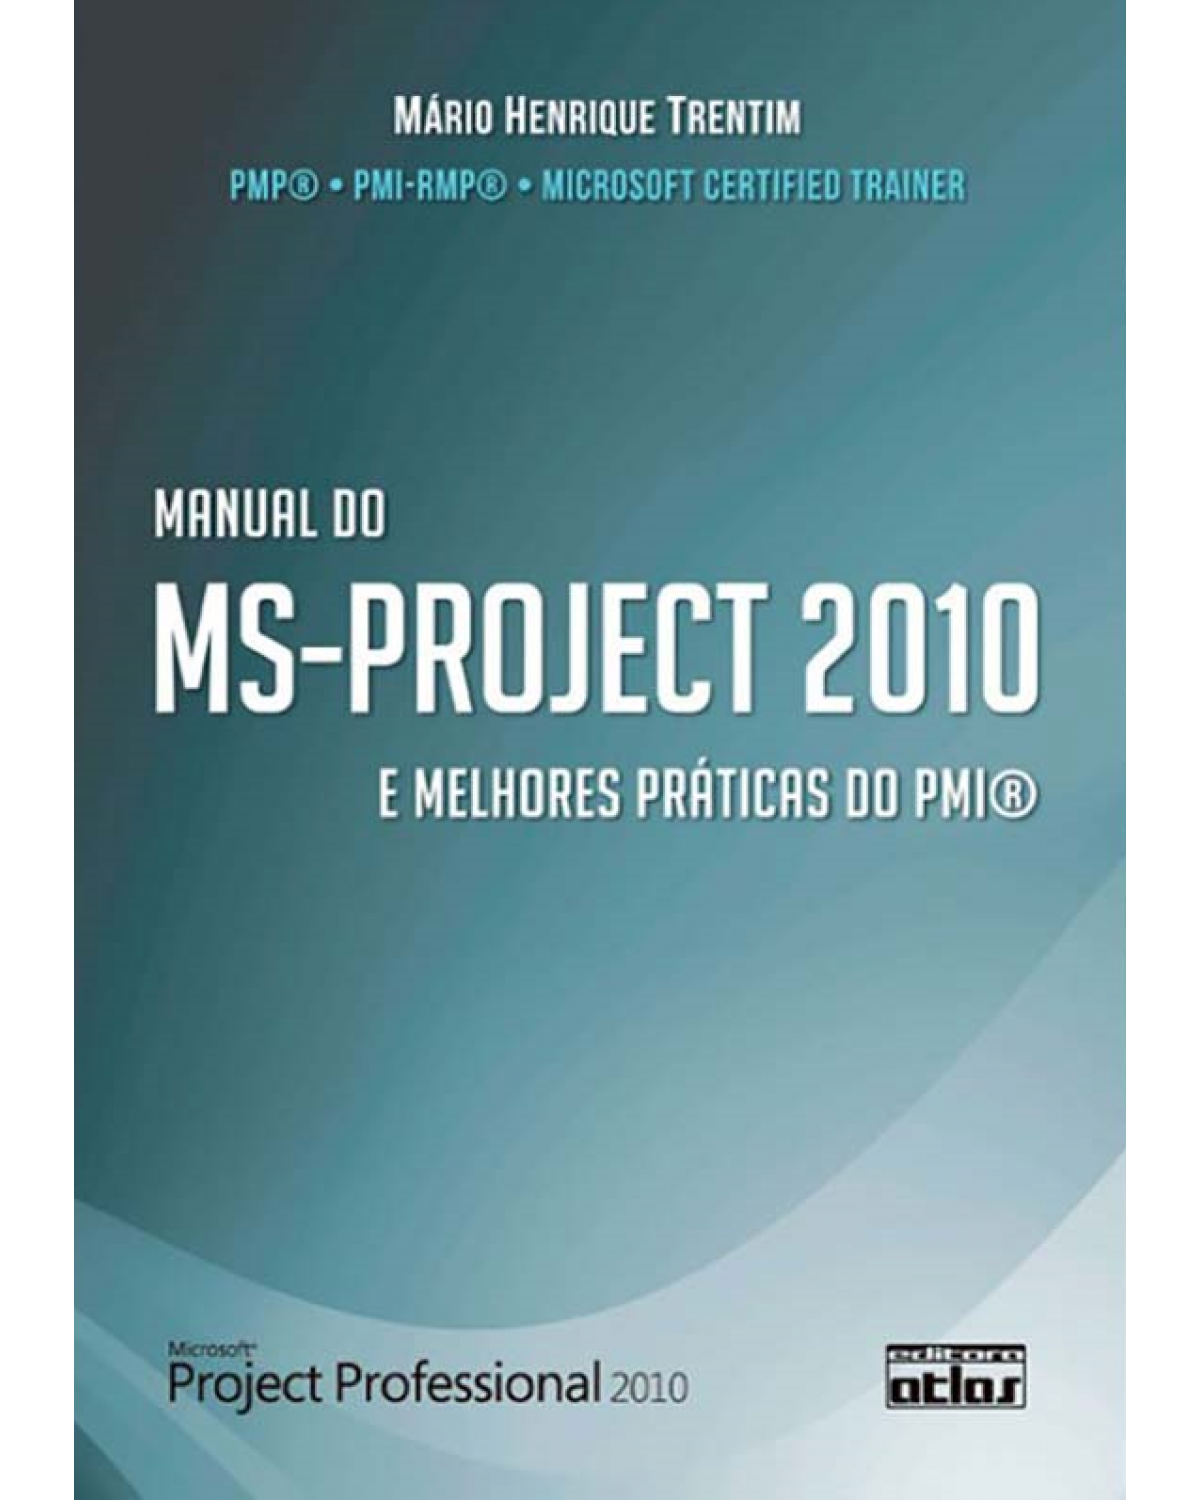 Manual do MS-PROJECT 2010 - E melhores práticas do PMI - 1ª Edição | 2012